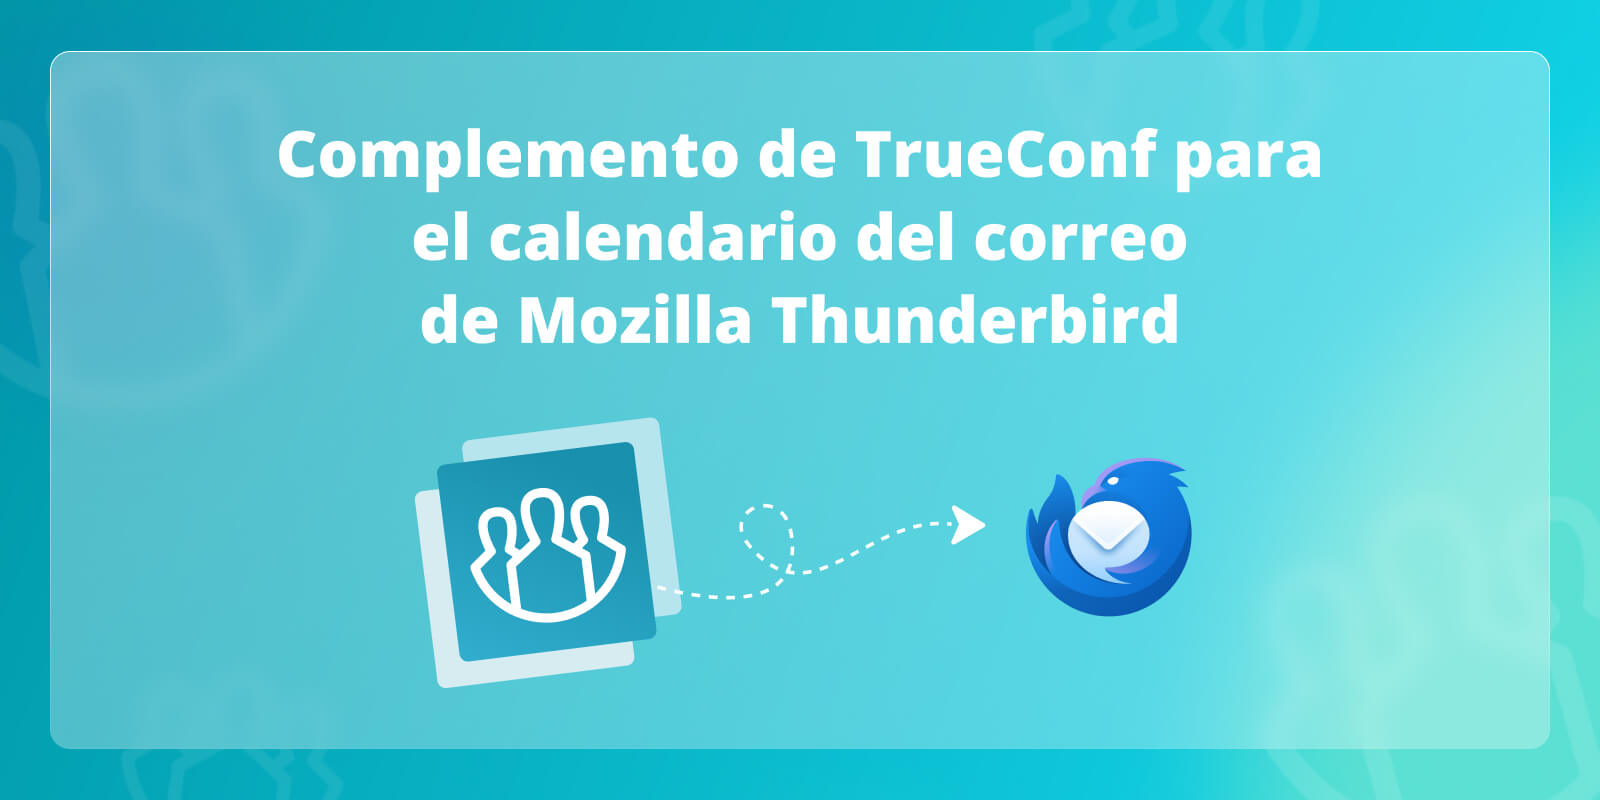 Complemento de TrueConf para el calendario del correo de Mozilla Thunderbird 1